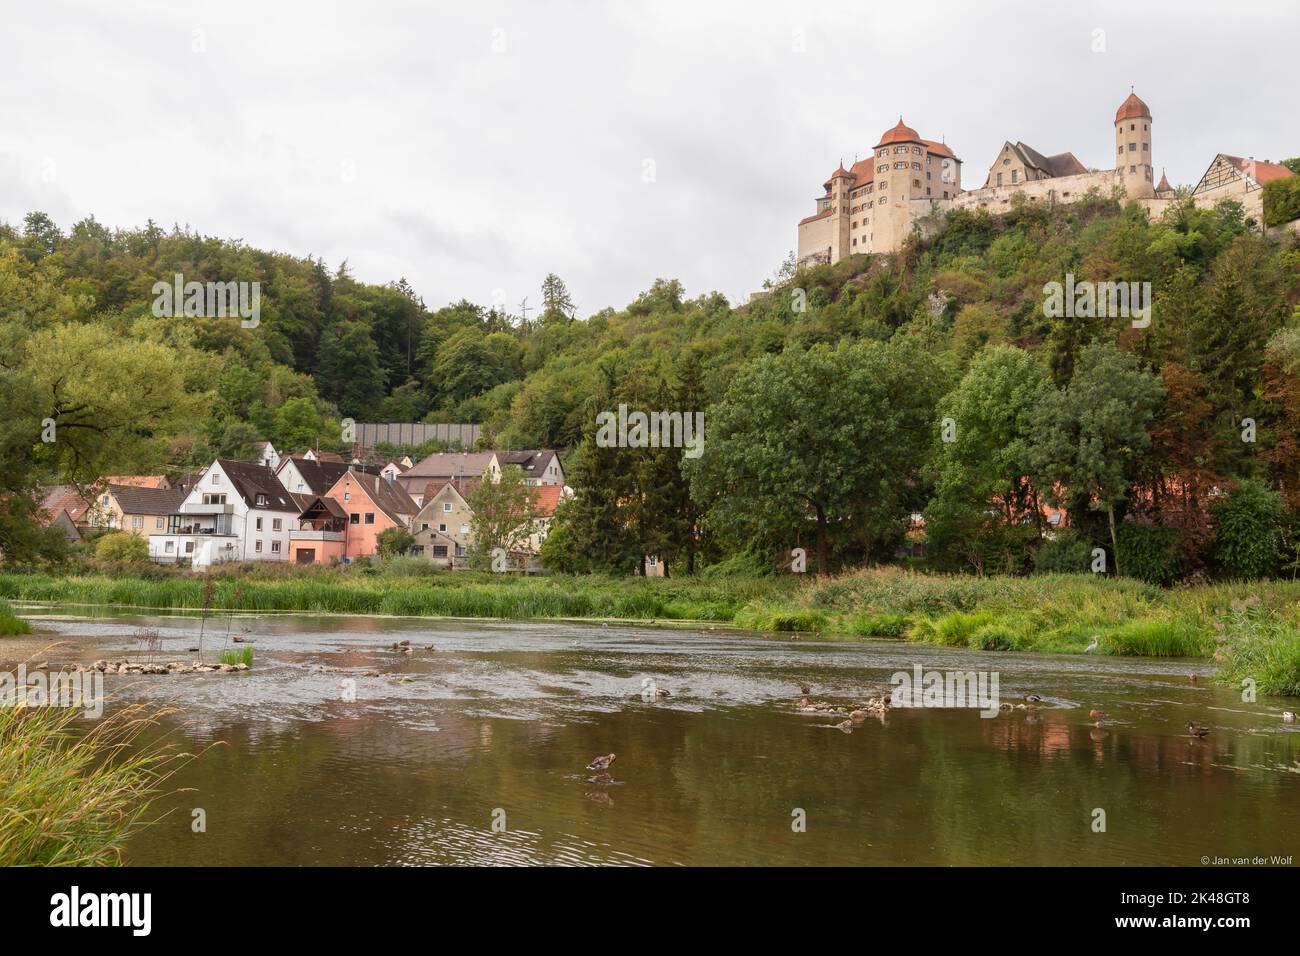 Il fiume Wörnitz si affaccia sul castello medievale di Harburg, nella pittoresca cittadina bavarese di Harburg, in Germania. Foto Stock